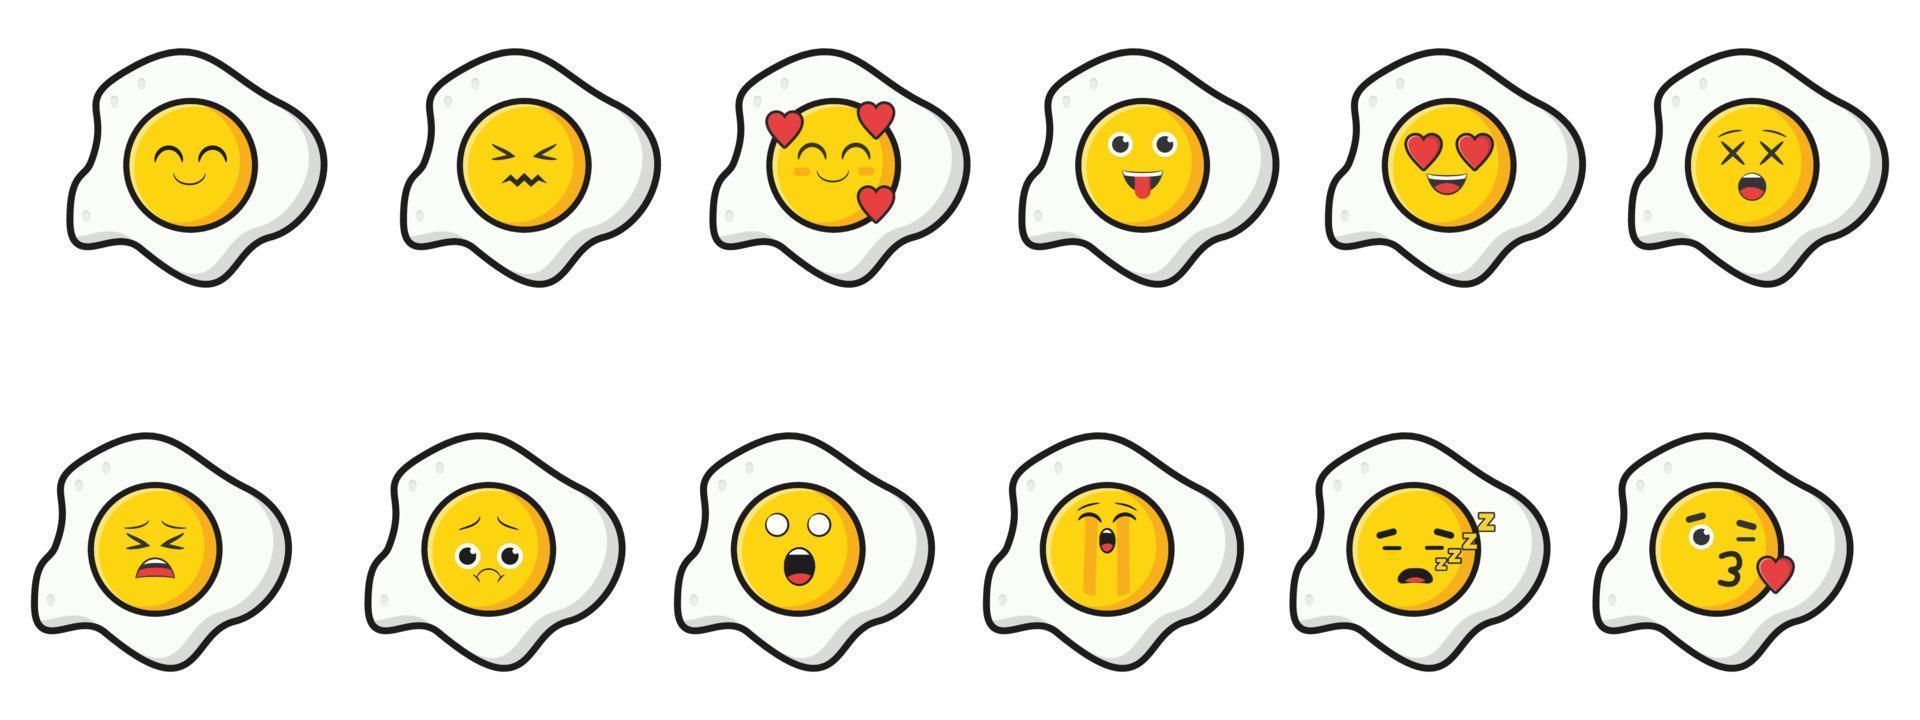 vector verzameling van eieren met emoticons